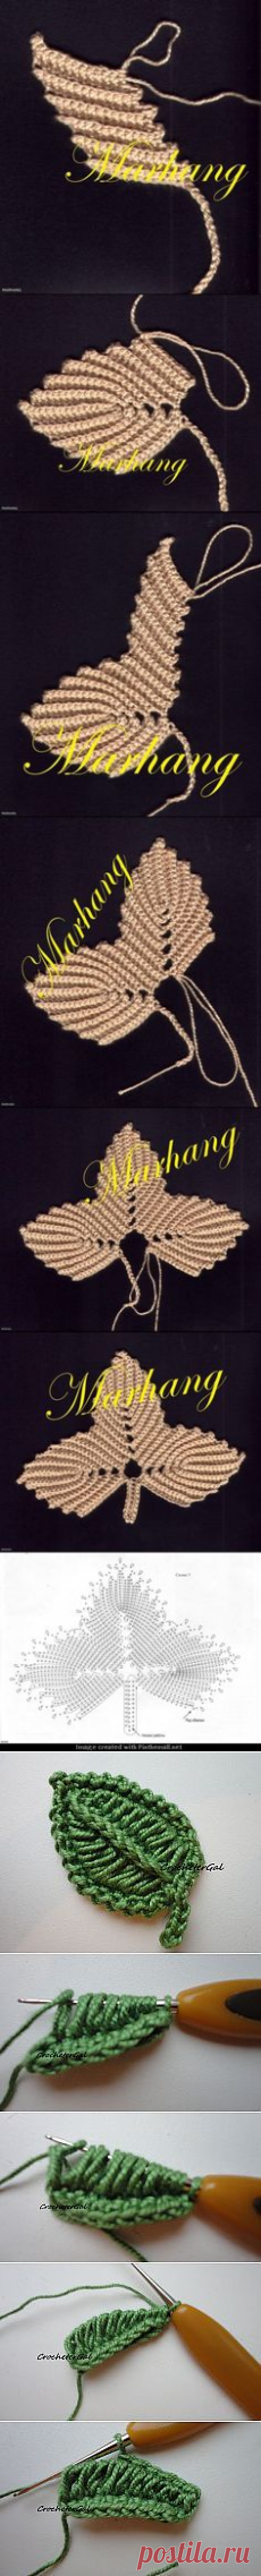 (34) tejidos artesanales en crochet: manta con tiras en zig zag tejida en crochet § schema chiarissimo § | plantillas crochet